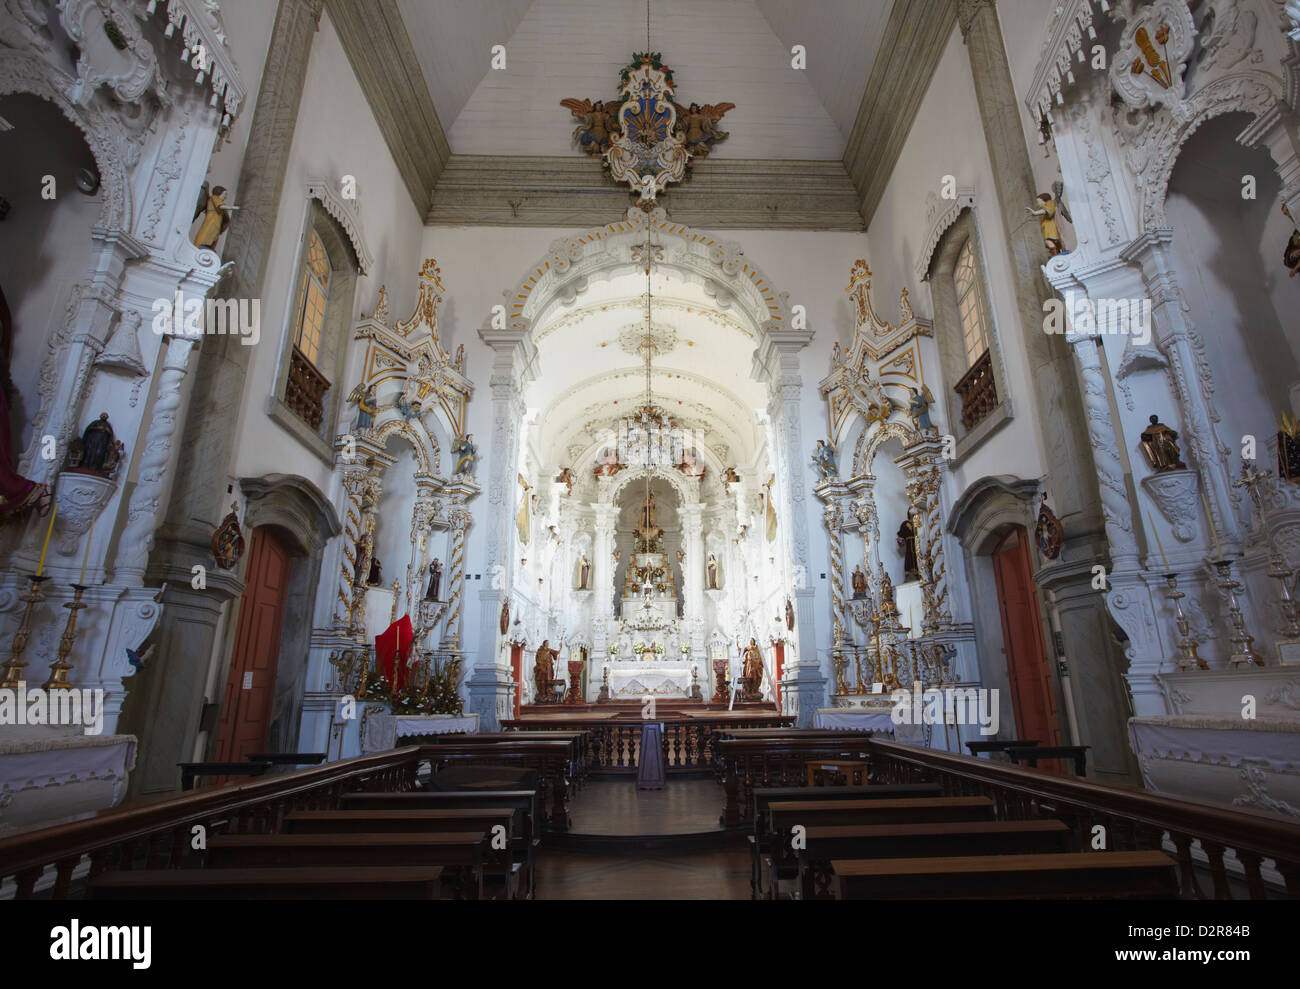 De l'intérieur (Nossa Senhora do Carmo) Notre Dame du Mont Carmel), l'église Sao Joao del Rei, Minas Gerais, Brésil, Amérique du Sud Banque D'Images